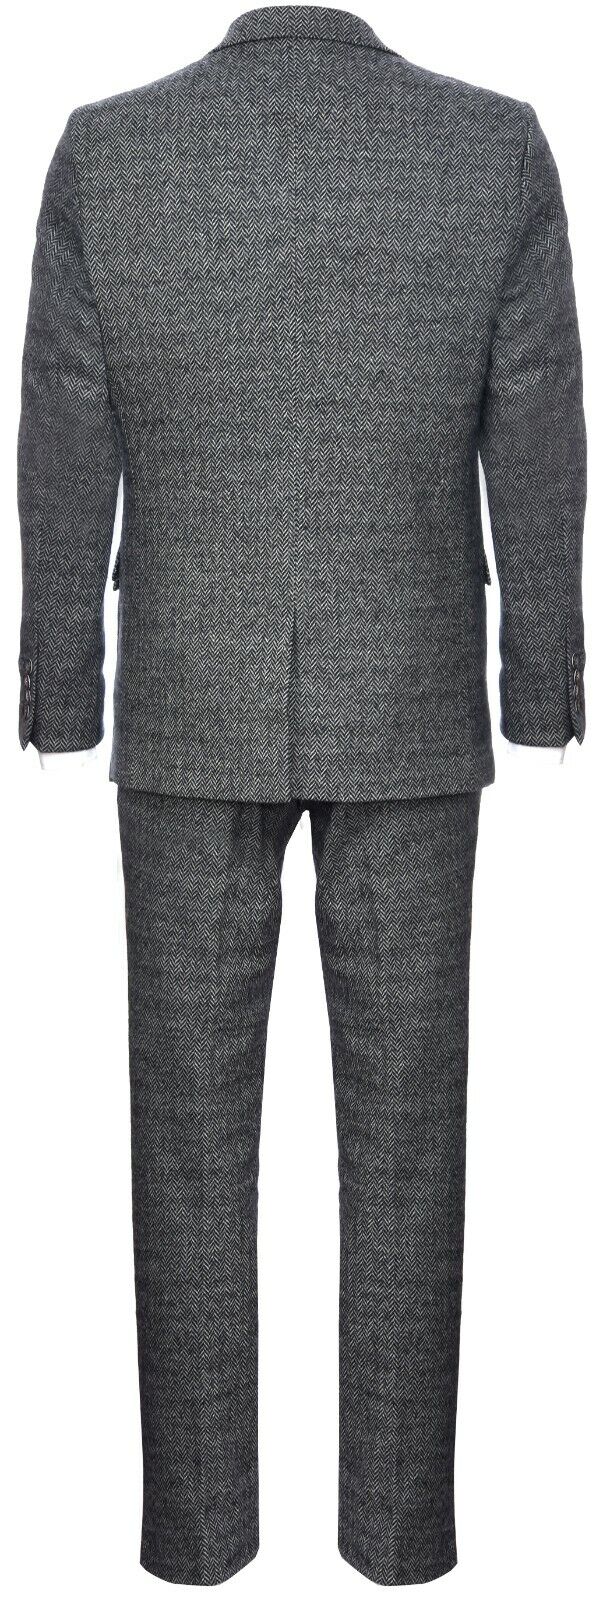 Mens Light Grey 3 Piece Tweed Suit Herringbone Wool Vintage Retro Peaky ...